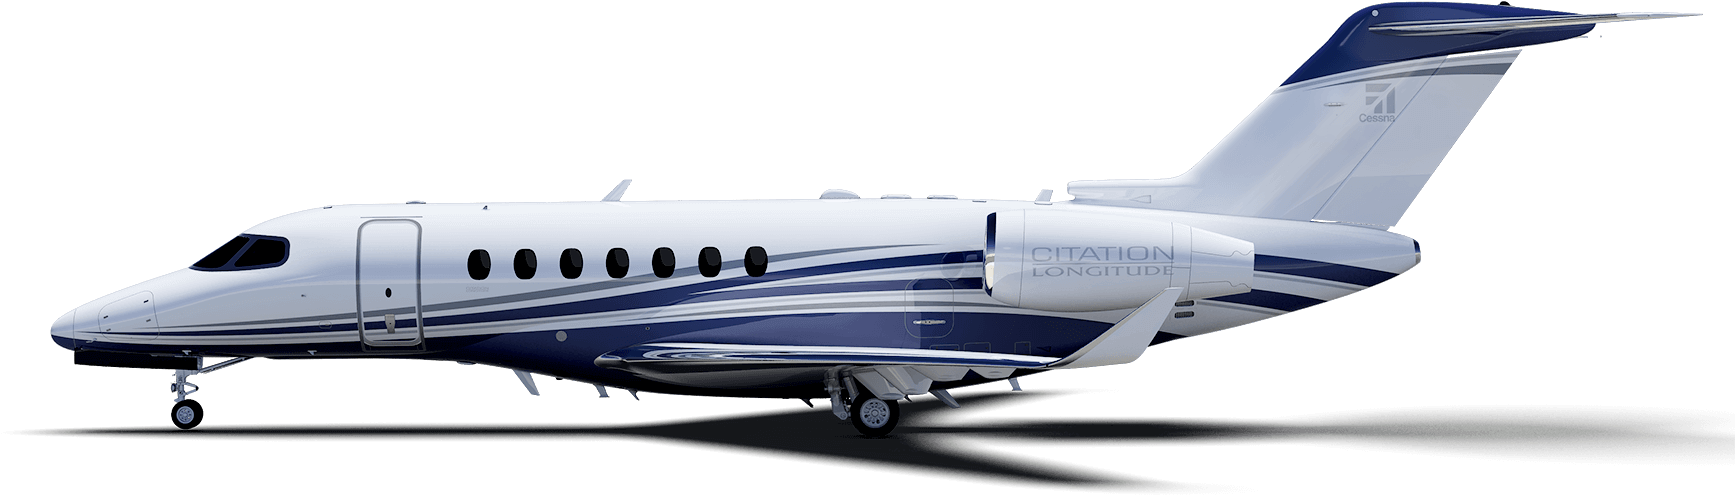 1800 X 573 2 - Citation Jet 2018 (1800x573)